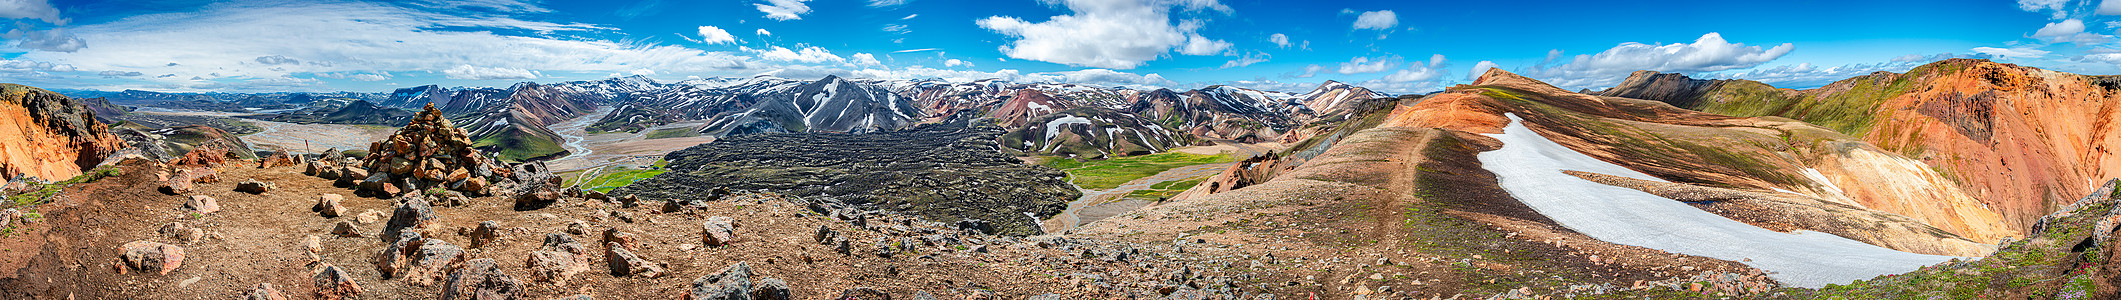 冰岛蓝天五颜六色的彩虹火山山脉 火山 熔岩场和露营地的 360 度全景景观地热远足探索观光高地冒险岩石旅行首脑登山图片